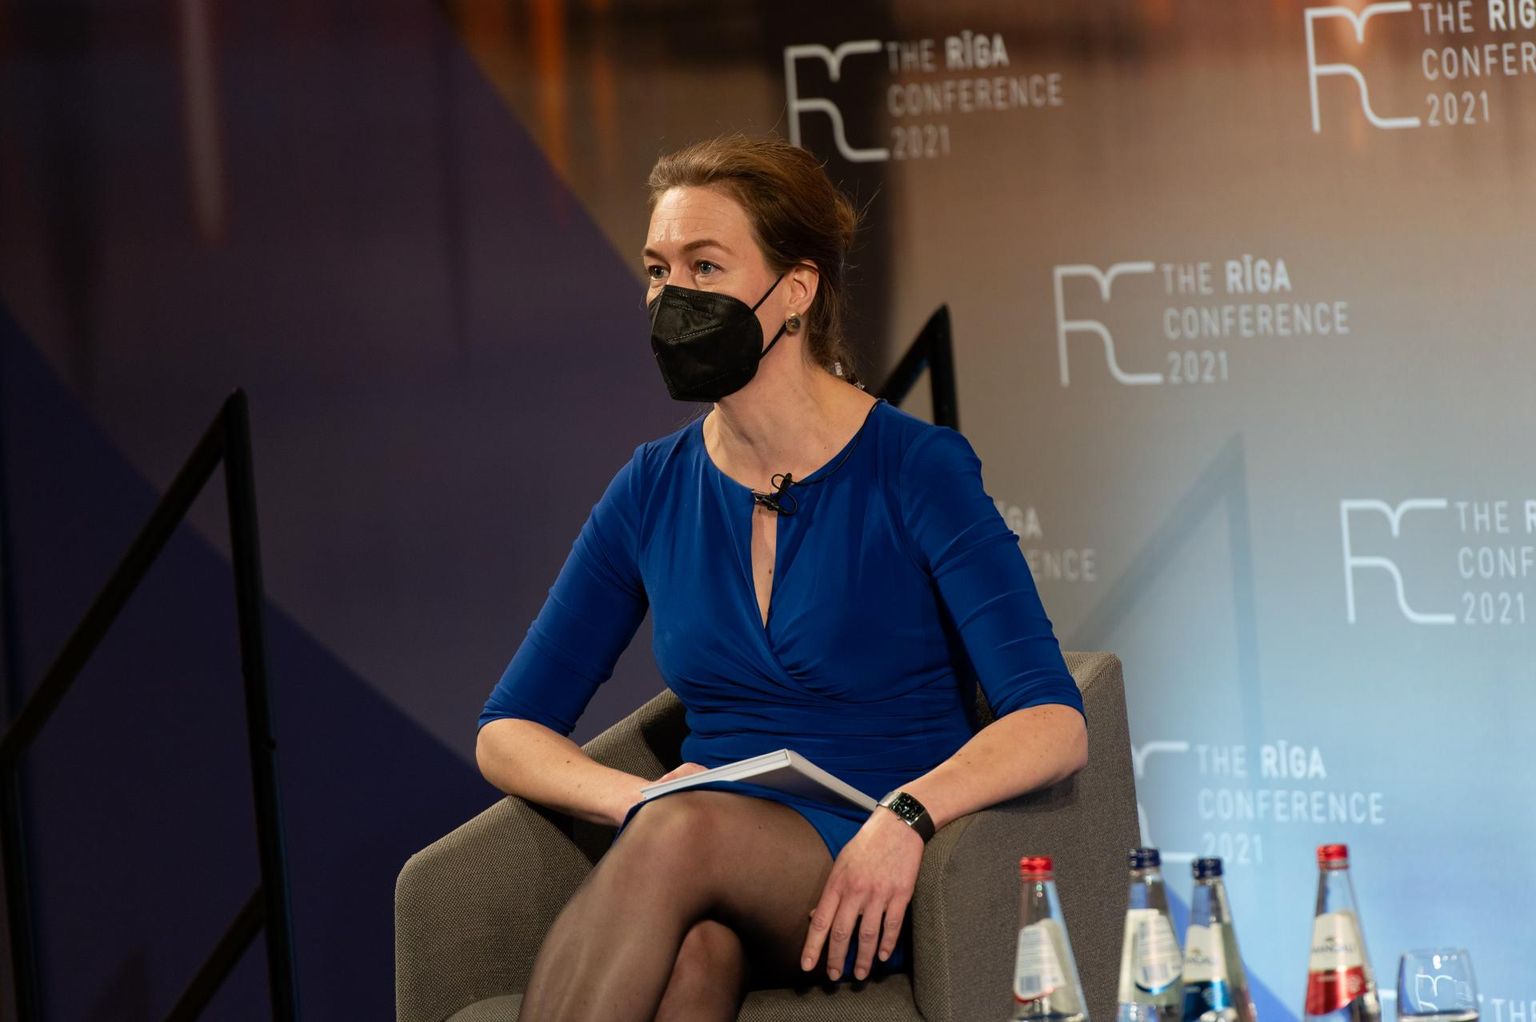 Hiina, julgeolekupoliitika- ja merendusekspert Sarah Kirchberger läinud kuul Riia julgeolekukonverentsil.